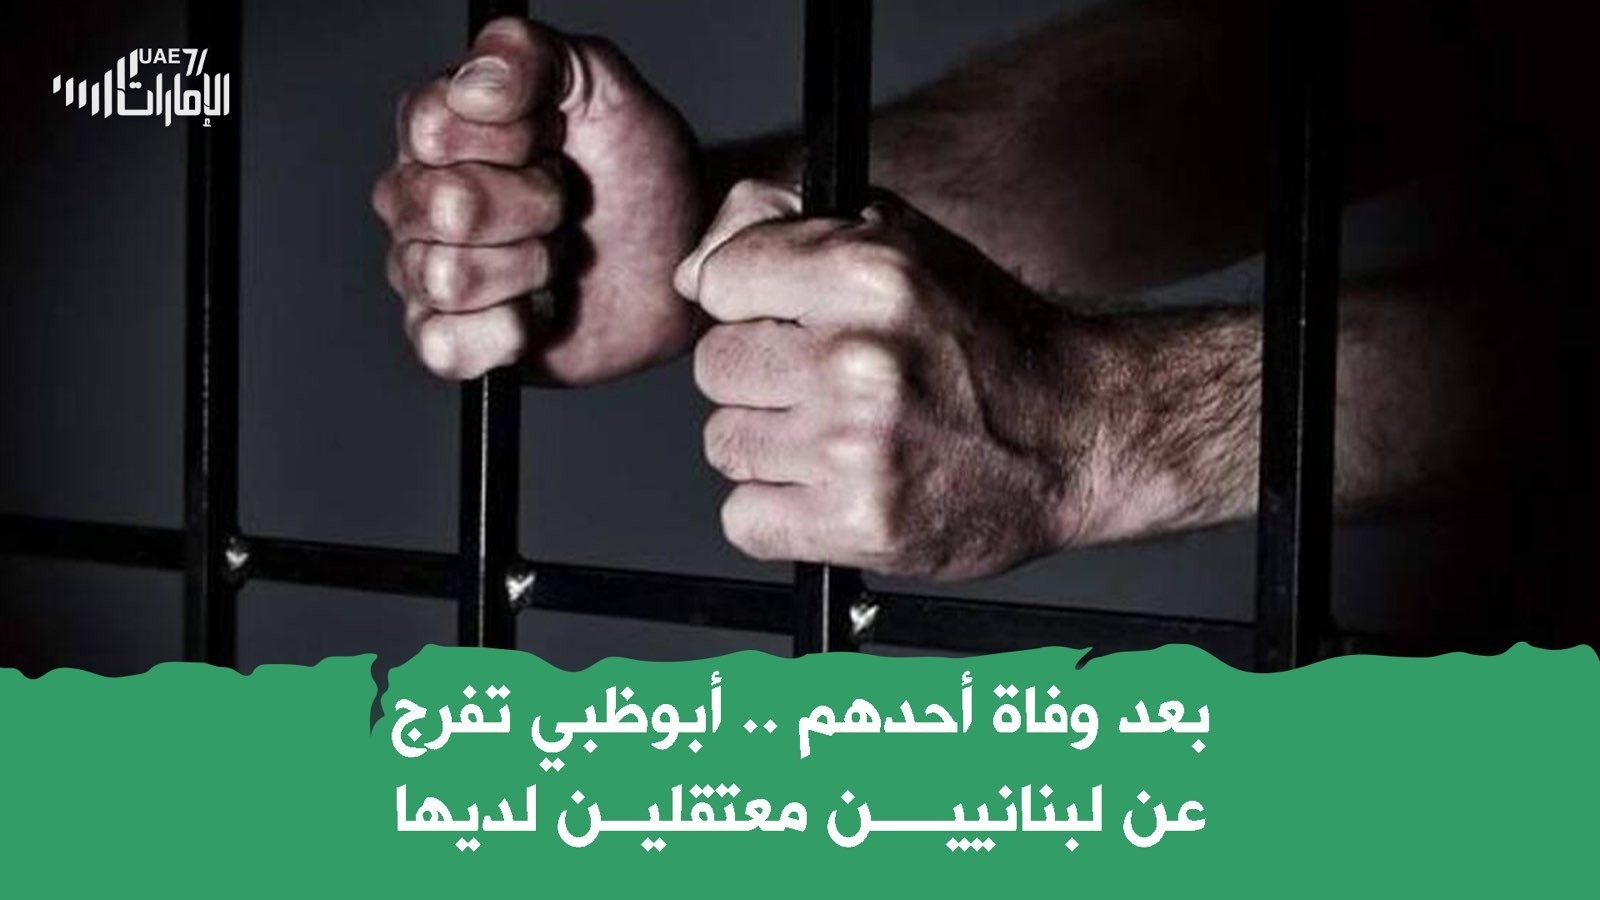 بعد وفاة أحدهم .. أبوظبي تفرج عن لبنانيين معتقلين لديها